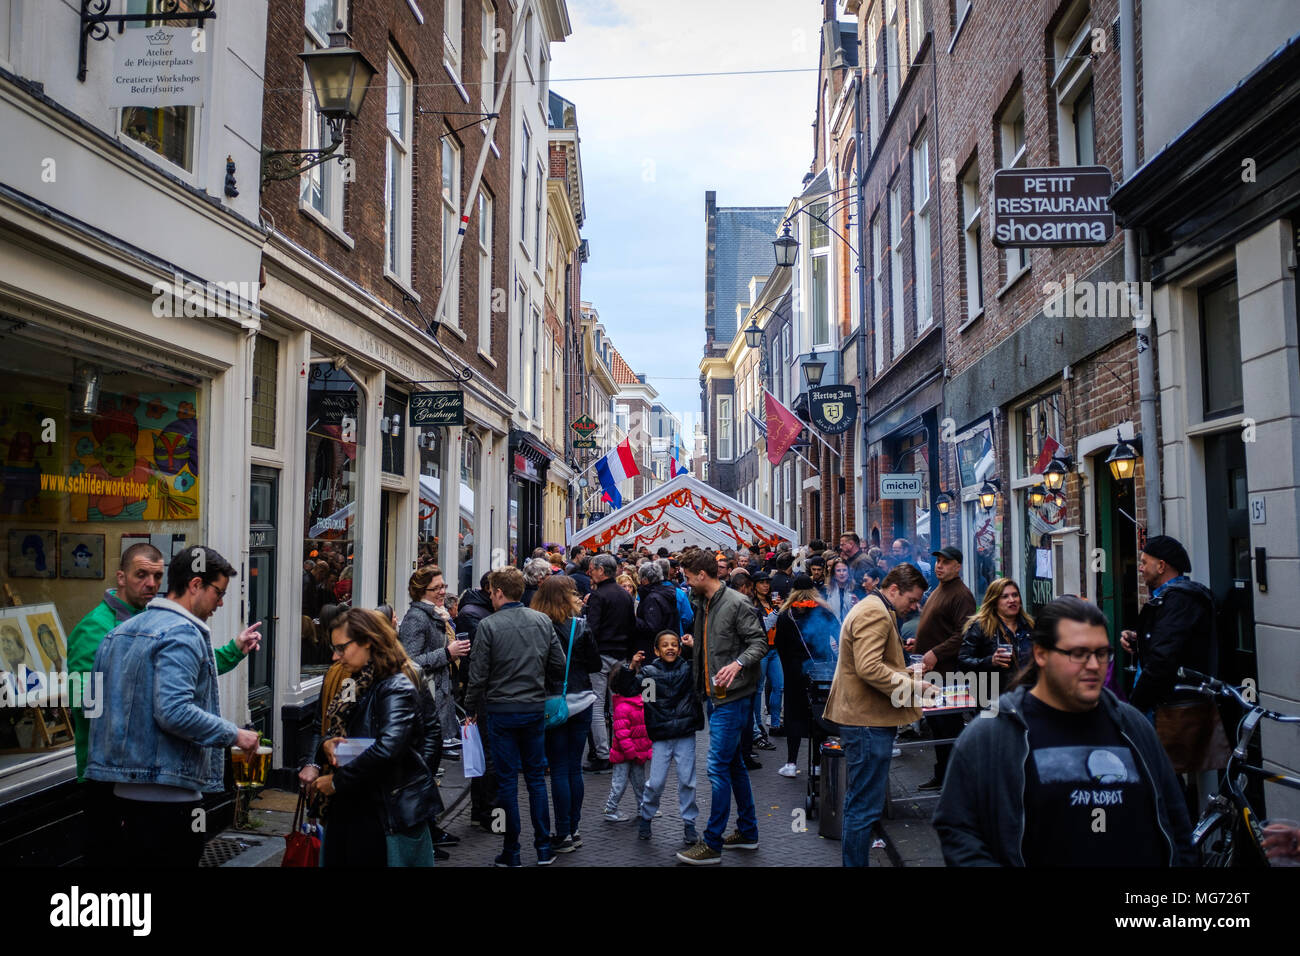 Petit festival de rue sur la fête du Roi dans la ville de La Haye en Hollande. Koningsdag ou King's Day est une fête nationale du Royaume des Pays-Bas. Célébrée le 27 avril, cette date marque la naissance du Roi Willem-Alexander. Banque D'Images